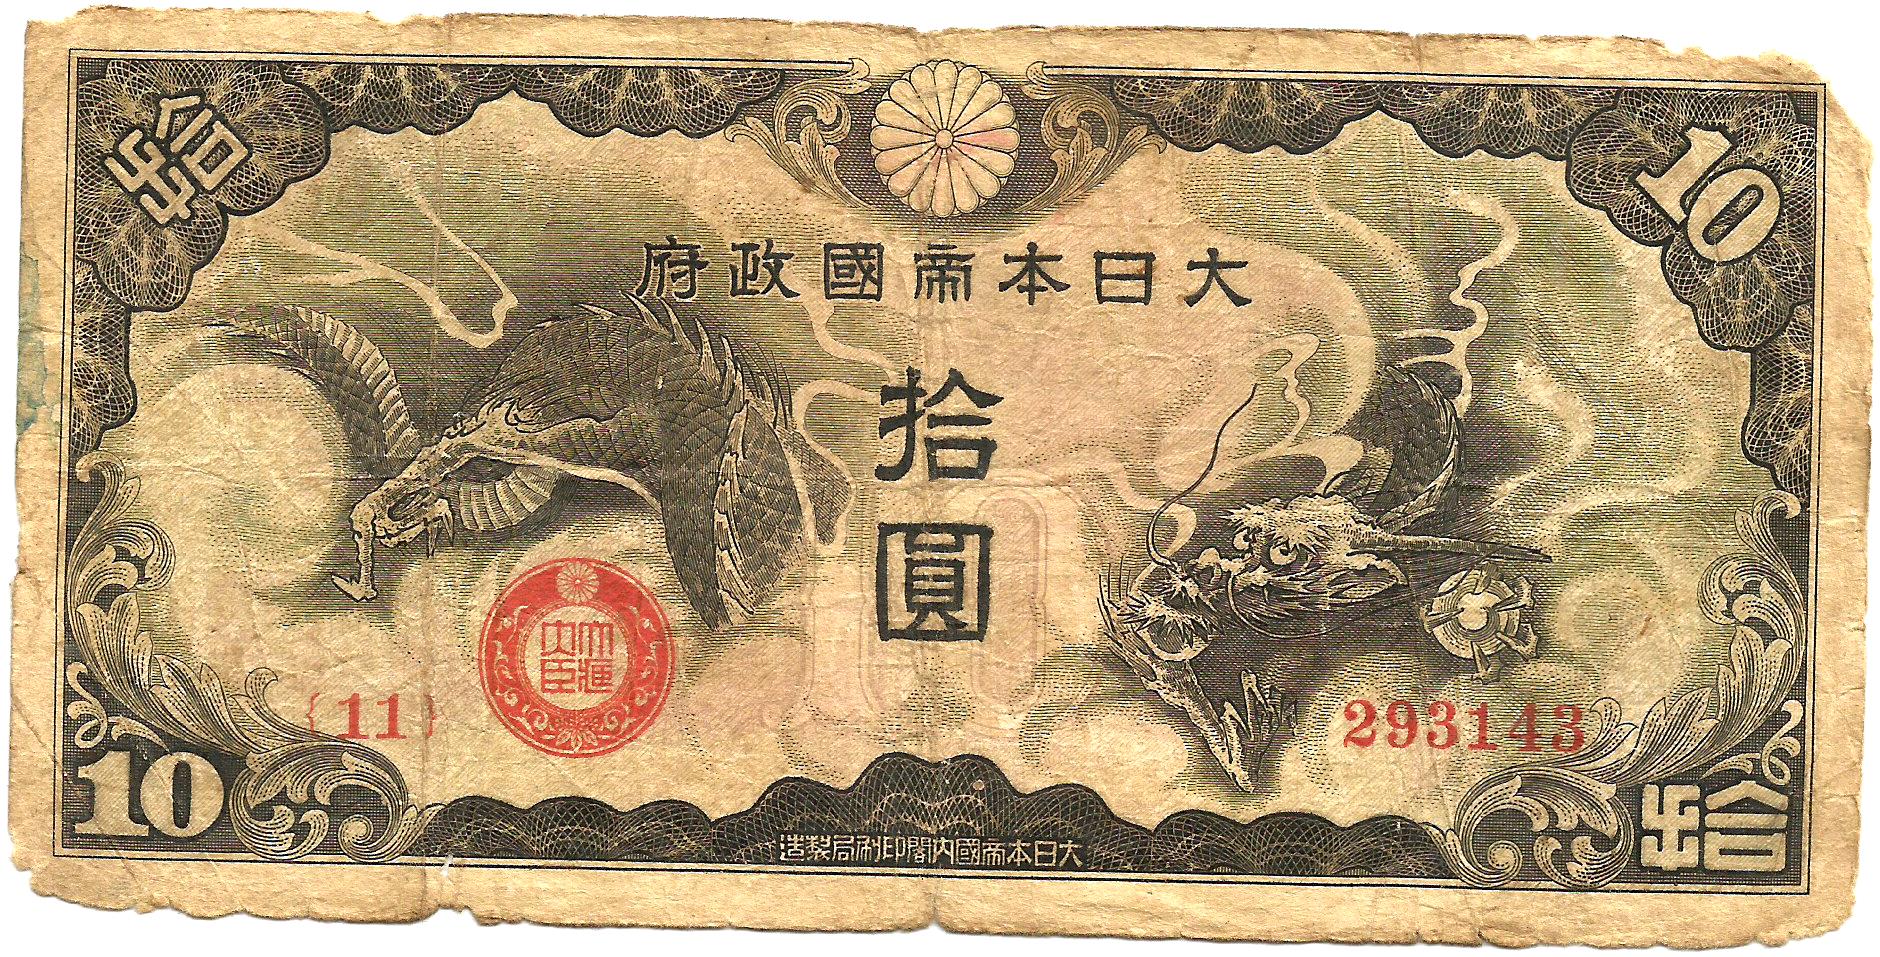 Китай японская оккупация10 иен 1940